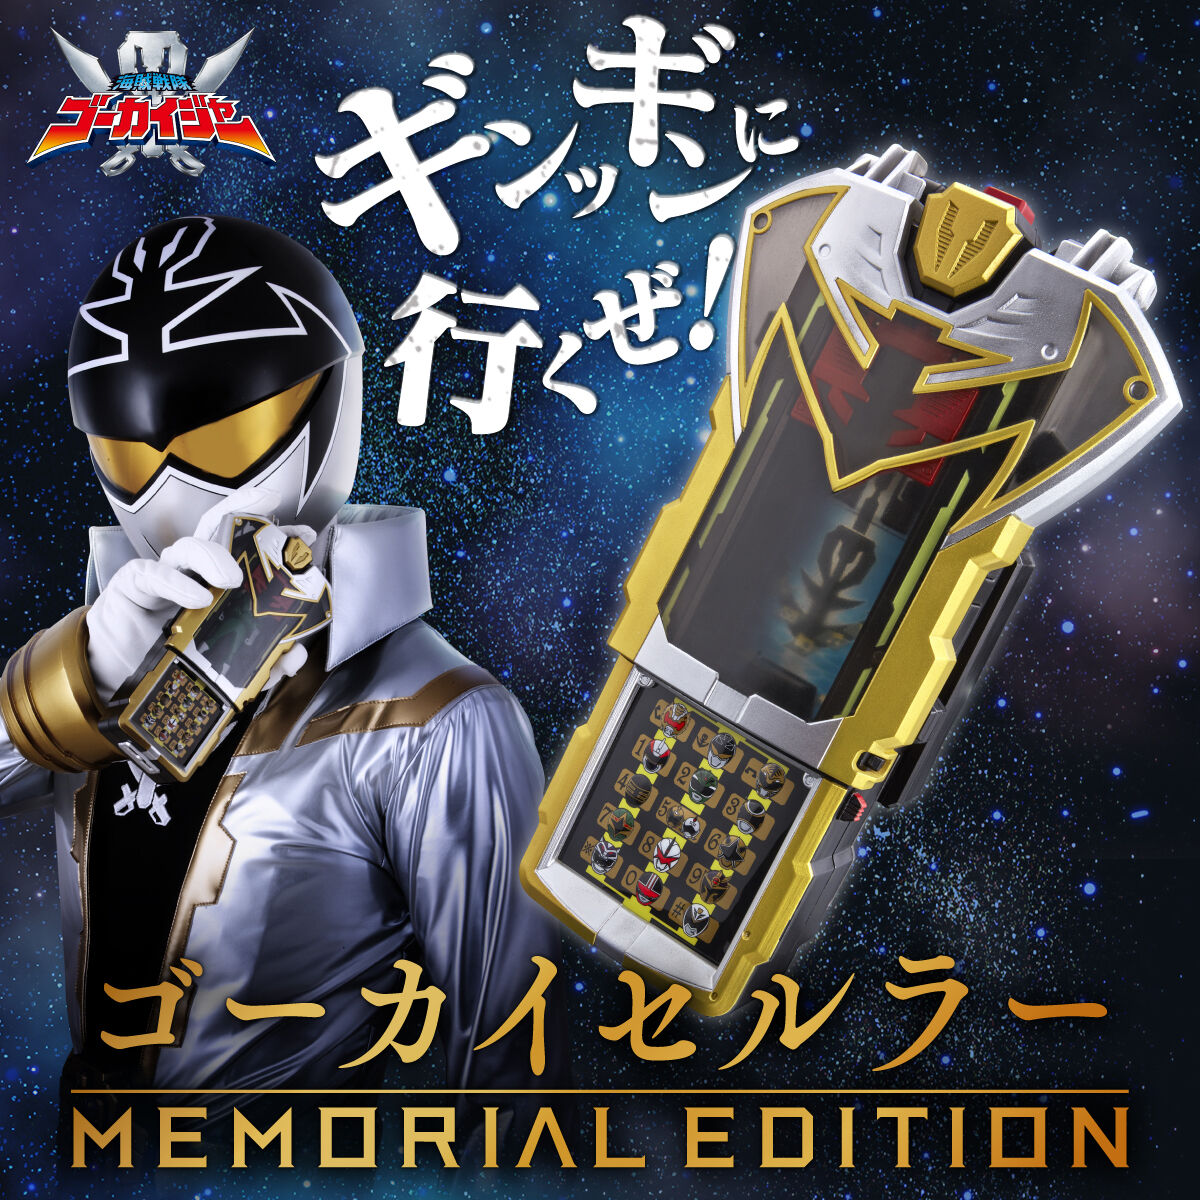 Gokai Cellular Memorial Edition